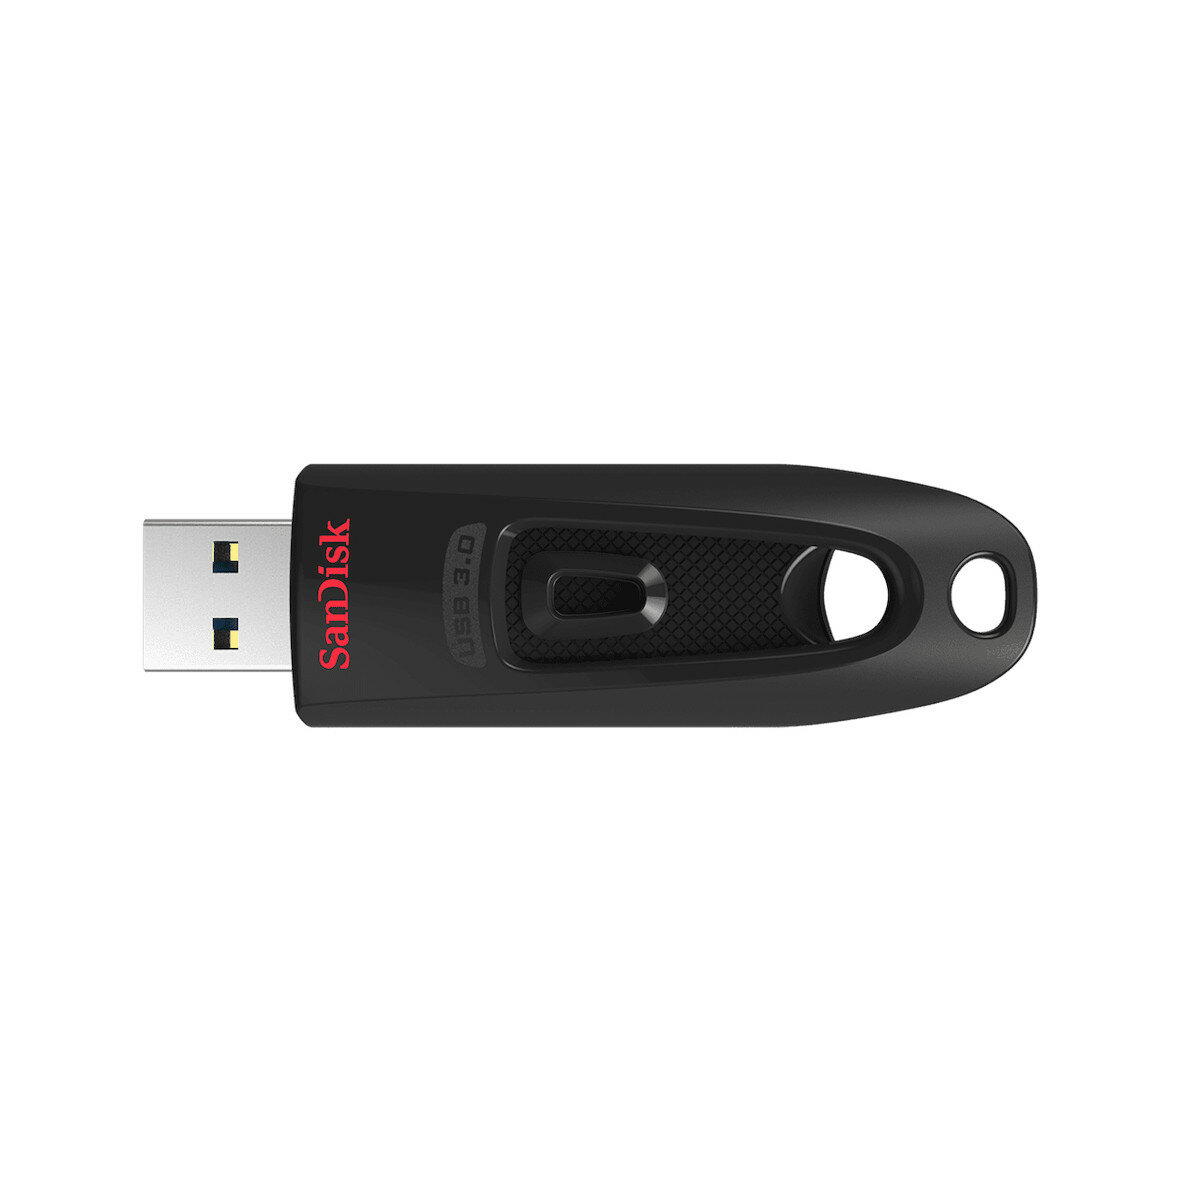 Pendrive SanDisk Ultra USB 3.0 256 GB widoczny z góry z wysuniętym złączem